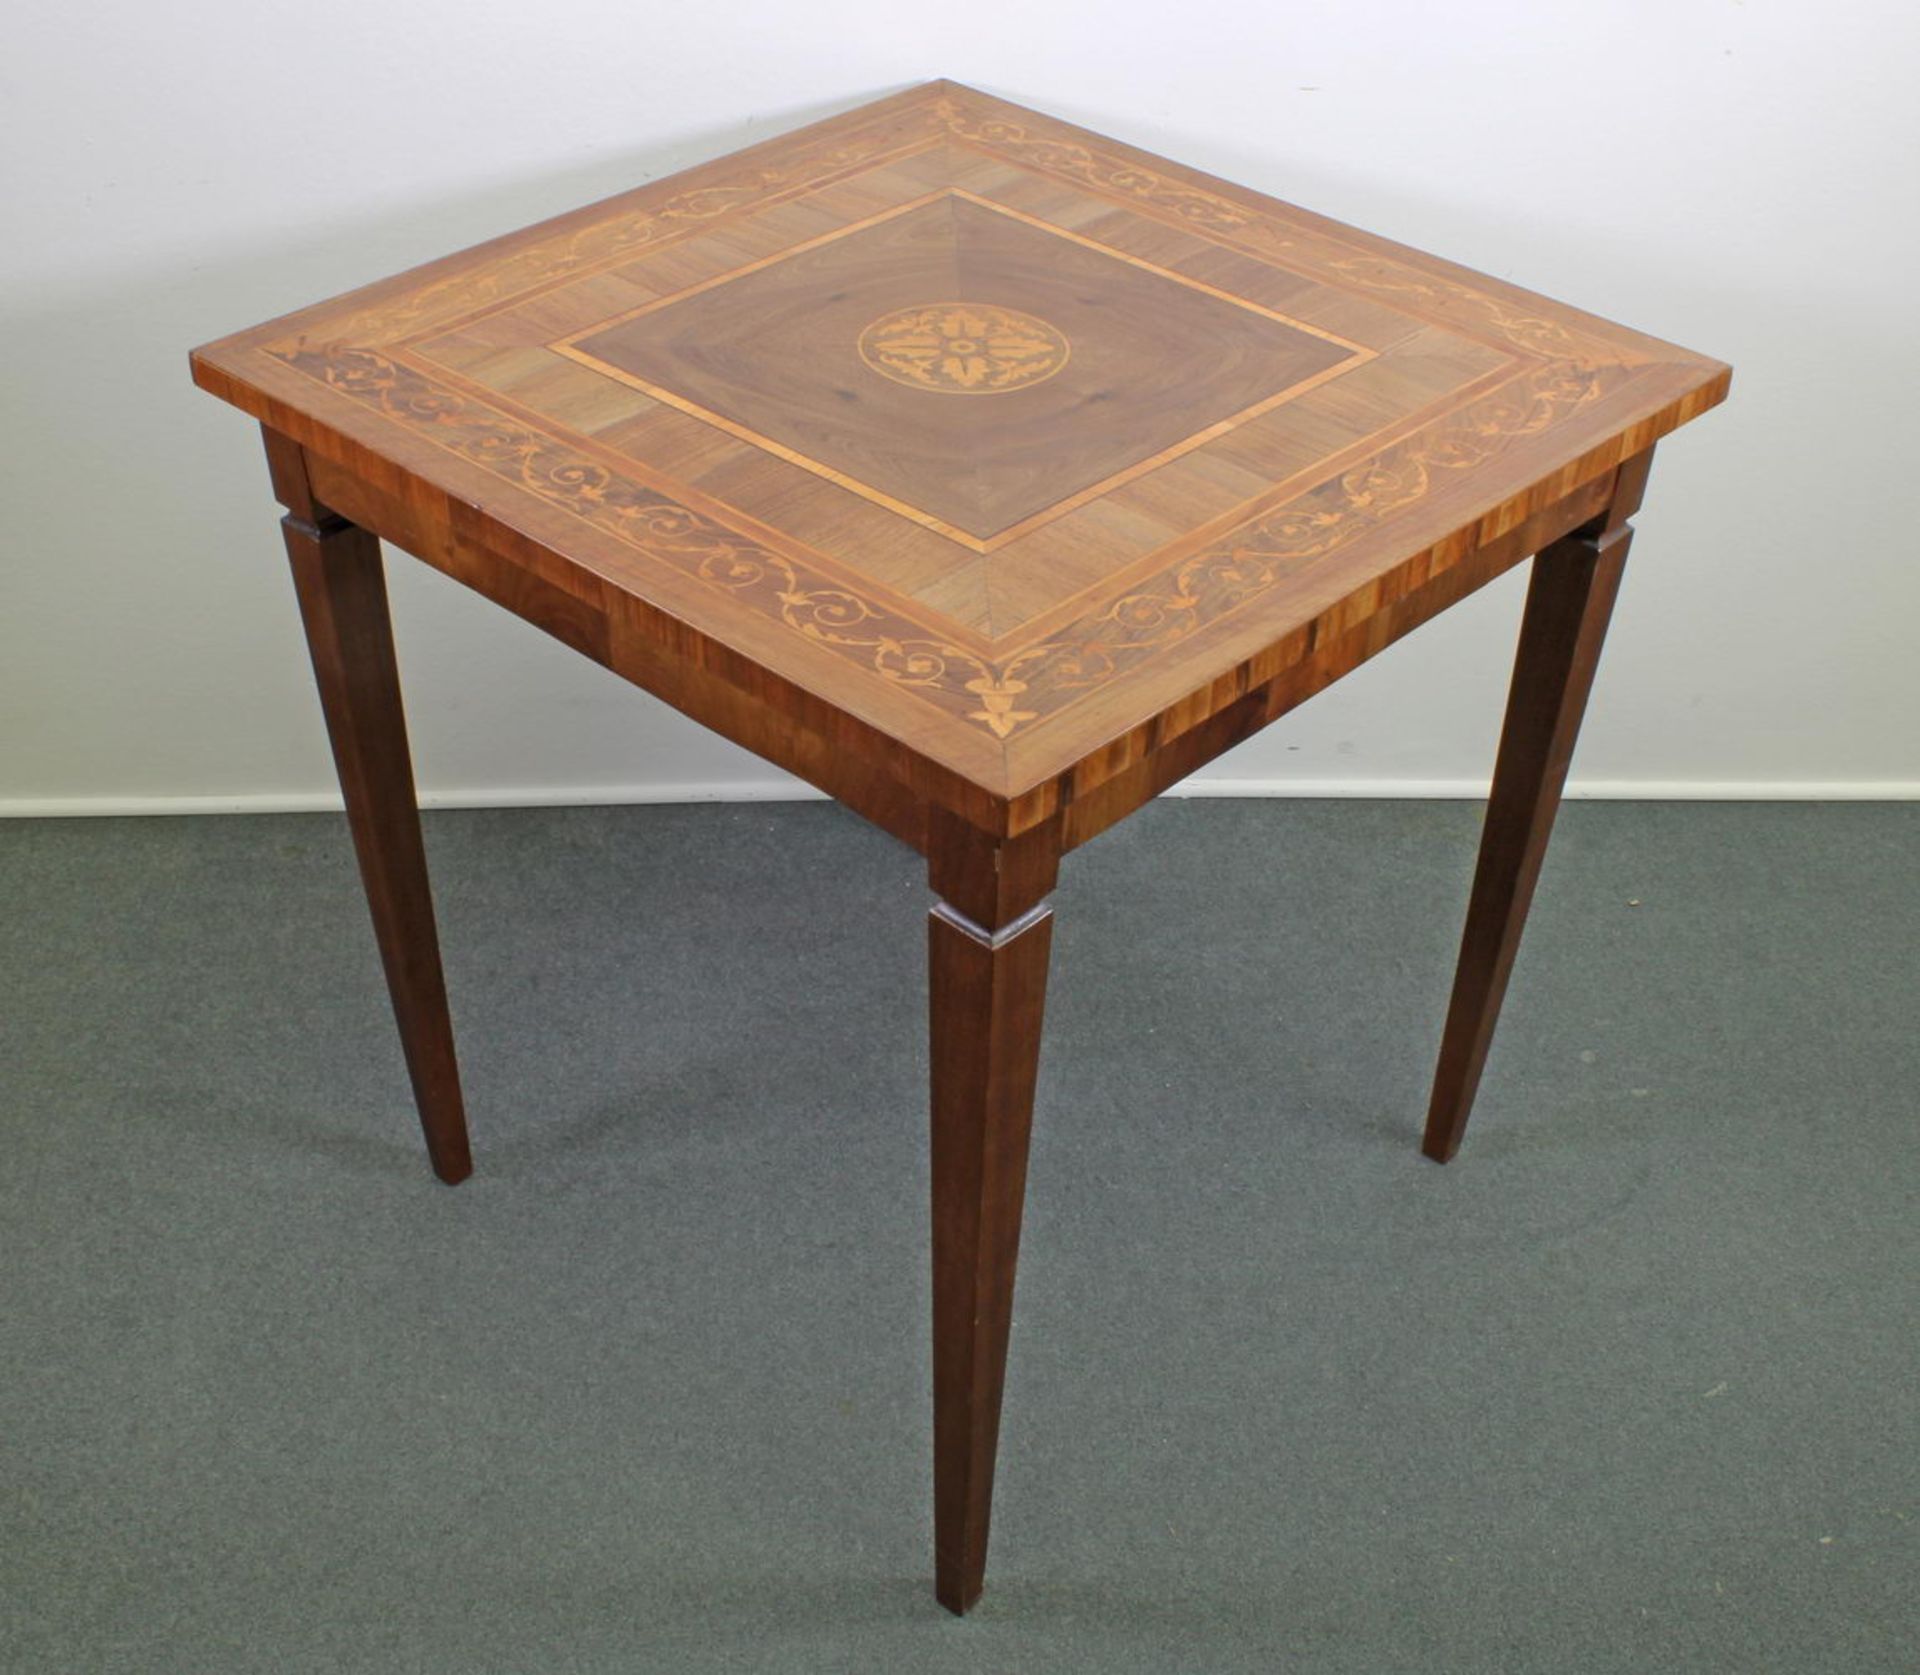 Tisch, Italien, 20. Jh., Nussbaum, Intarsienhölzer, unter Verwendung einer alten Platte, 76.5 x 75